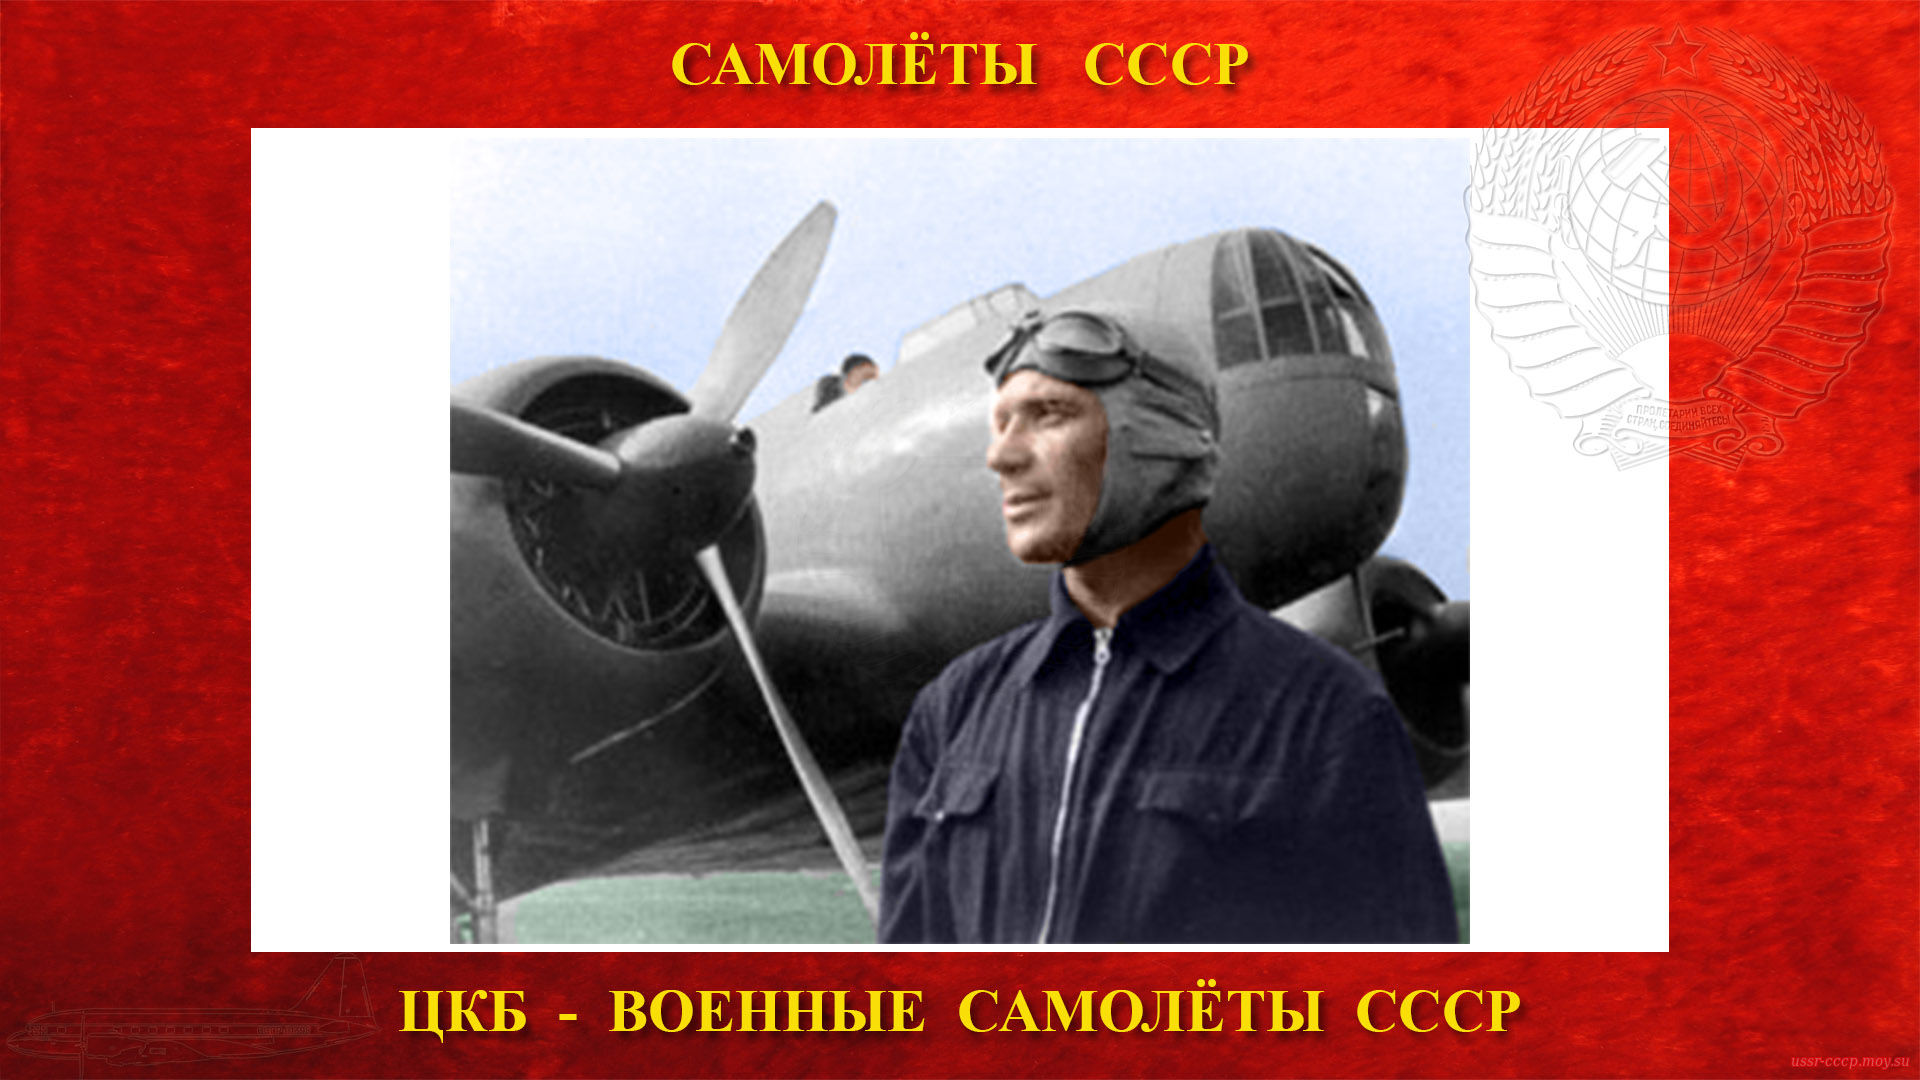 Первый полёт ЦКБ-26 лётчиком-испытателем В.К. Коккинаки.